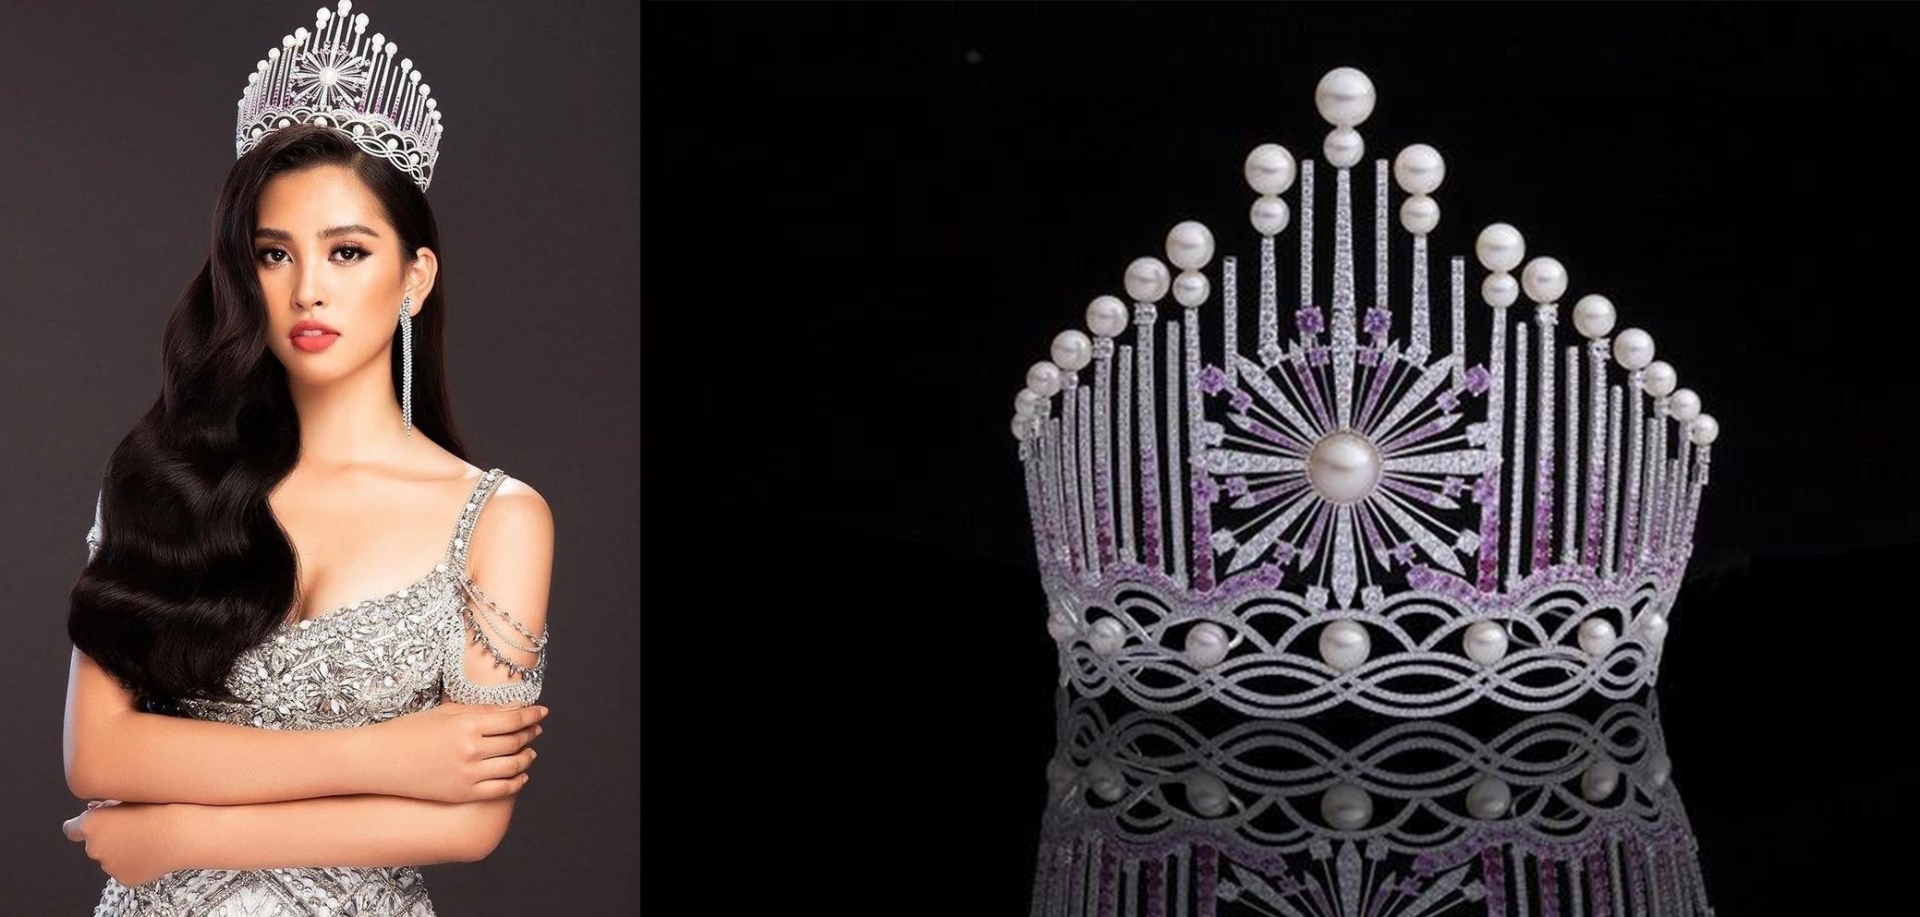 8 vương miện đắt giá nhất lịch sử Hoa hậu Việt Nam: Chiếc đắt nhất thuộc về cô Hoa hậu thị phi nhất - Ảnh 5